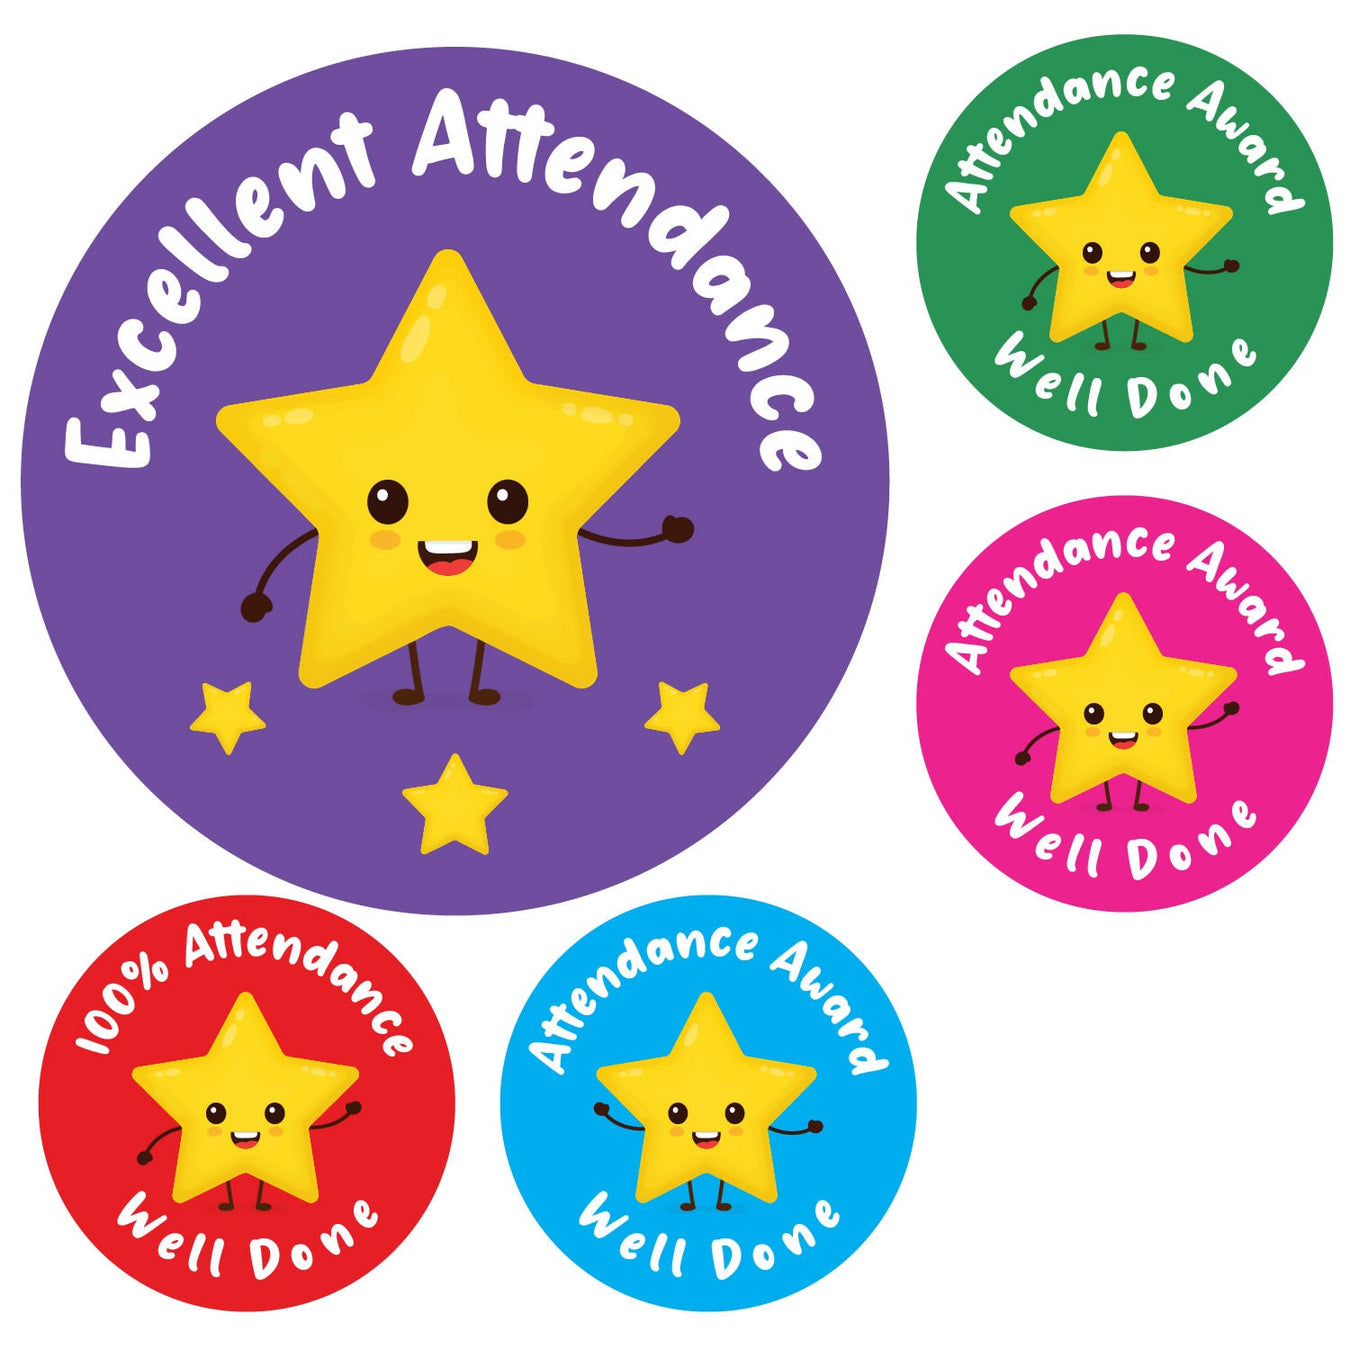 Attendance Reward Stickers